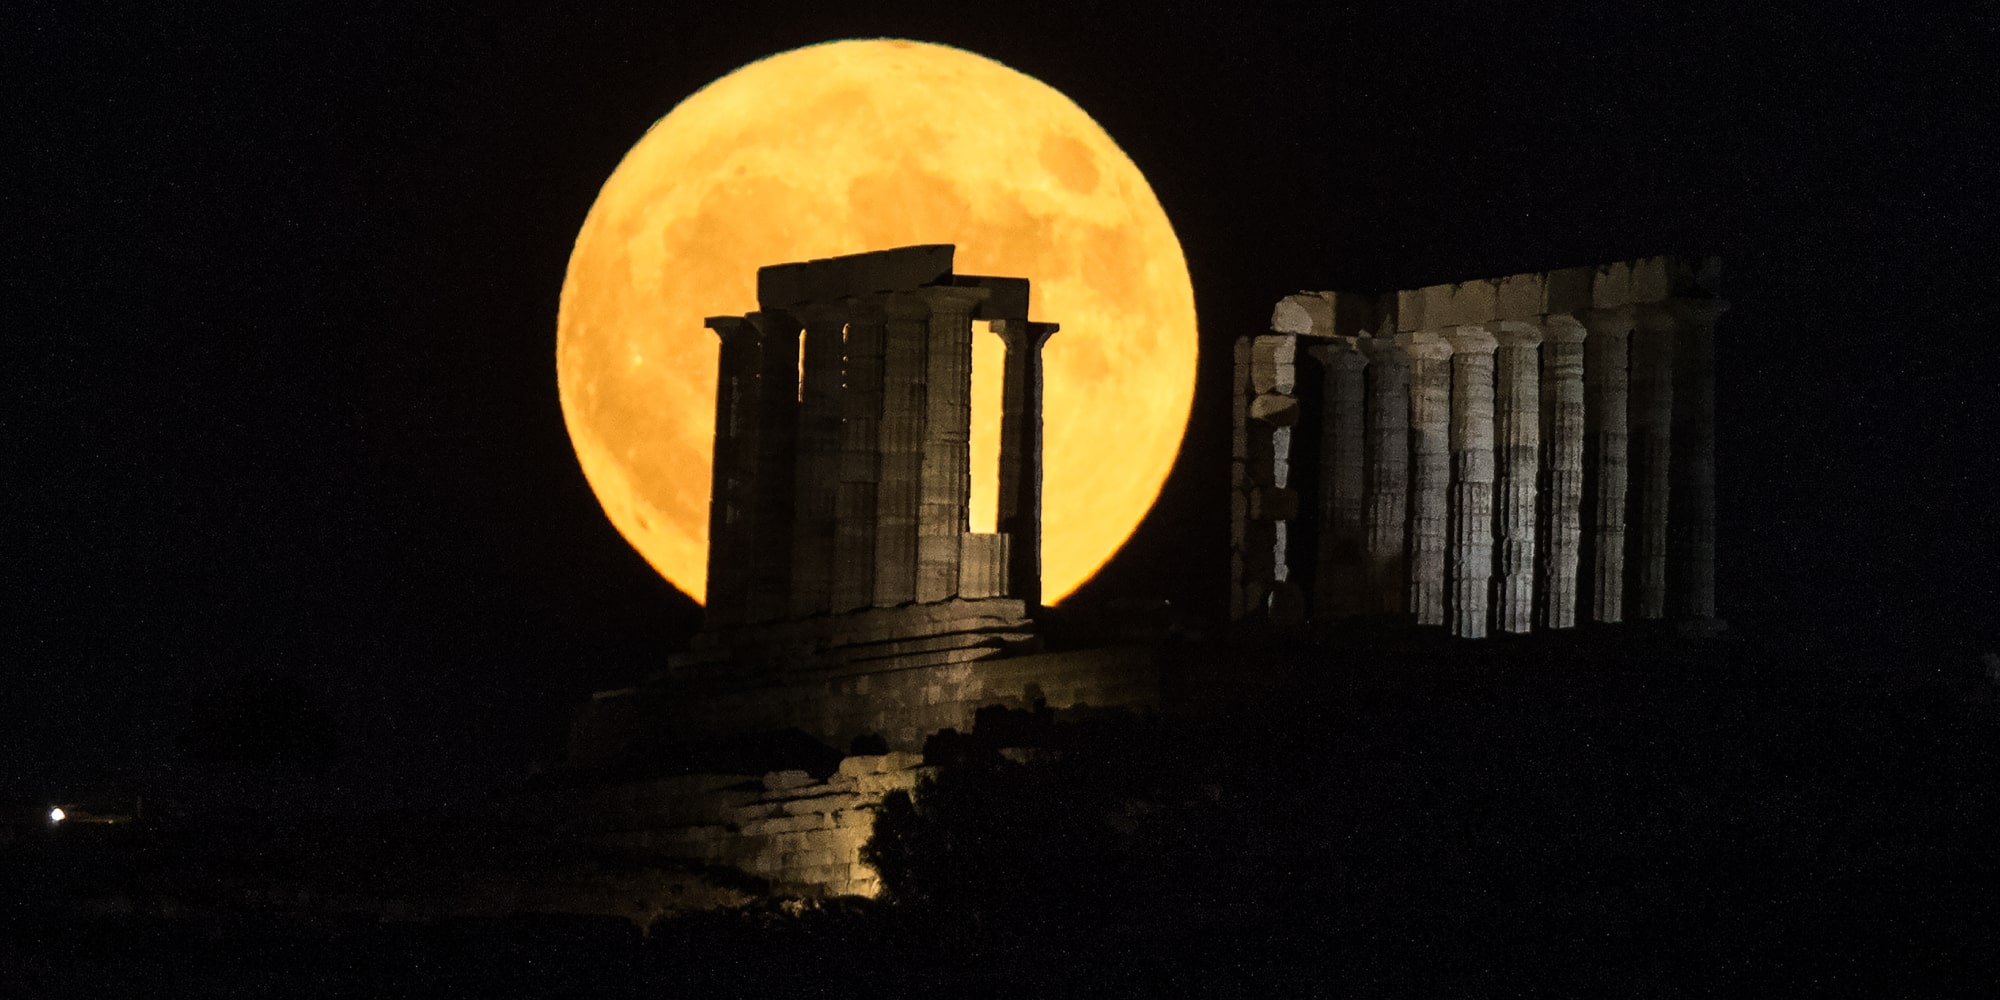 Πέντε συγκλονιστικά κλικ από την υπερπανσέληνο του Αυγούστου: Από την Ακρόπολη μέχρι το Σούνιο, μάγεψε το «φεγγάρι του οξύρρυγχου»